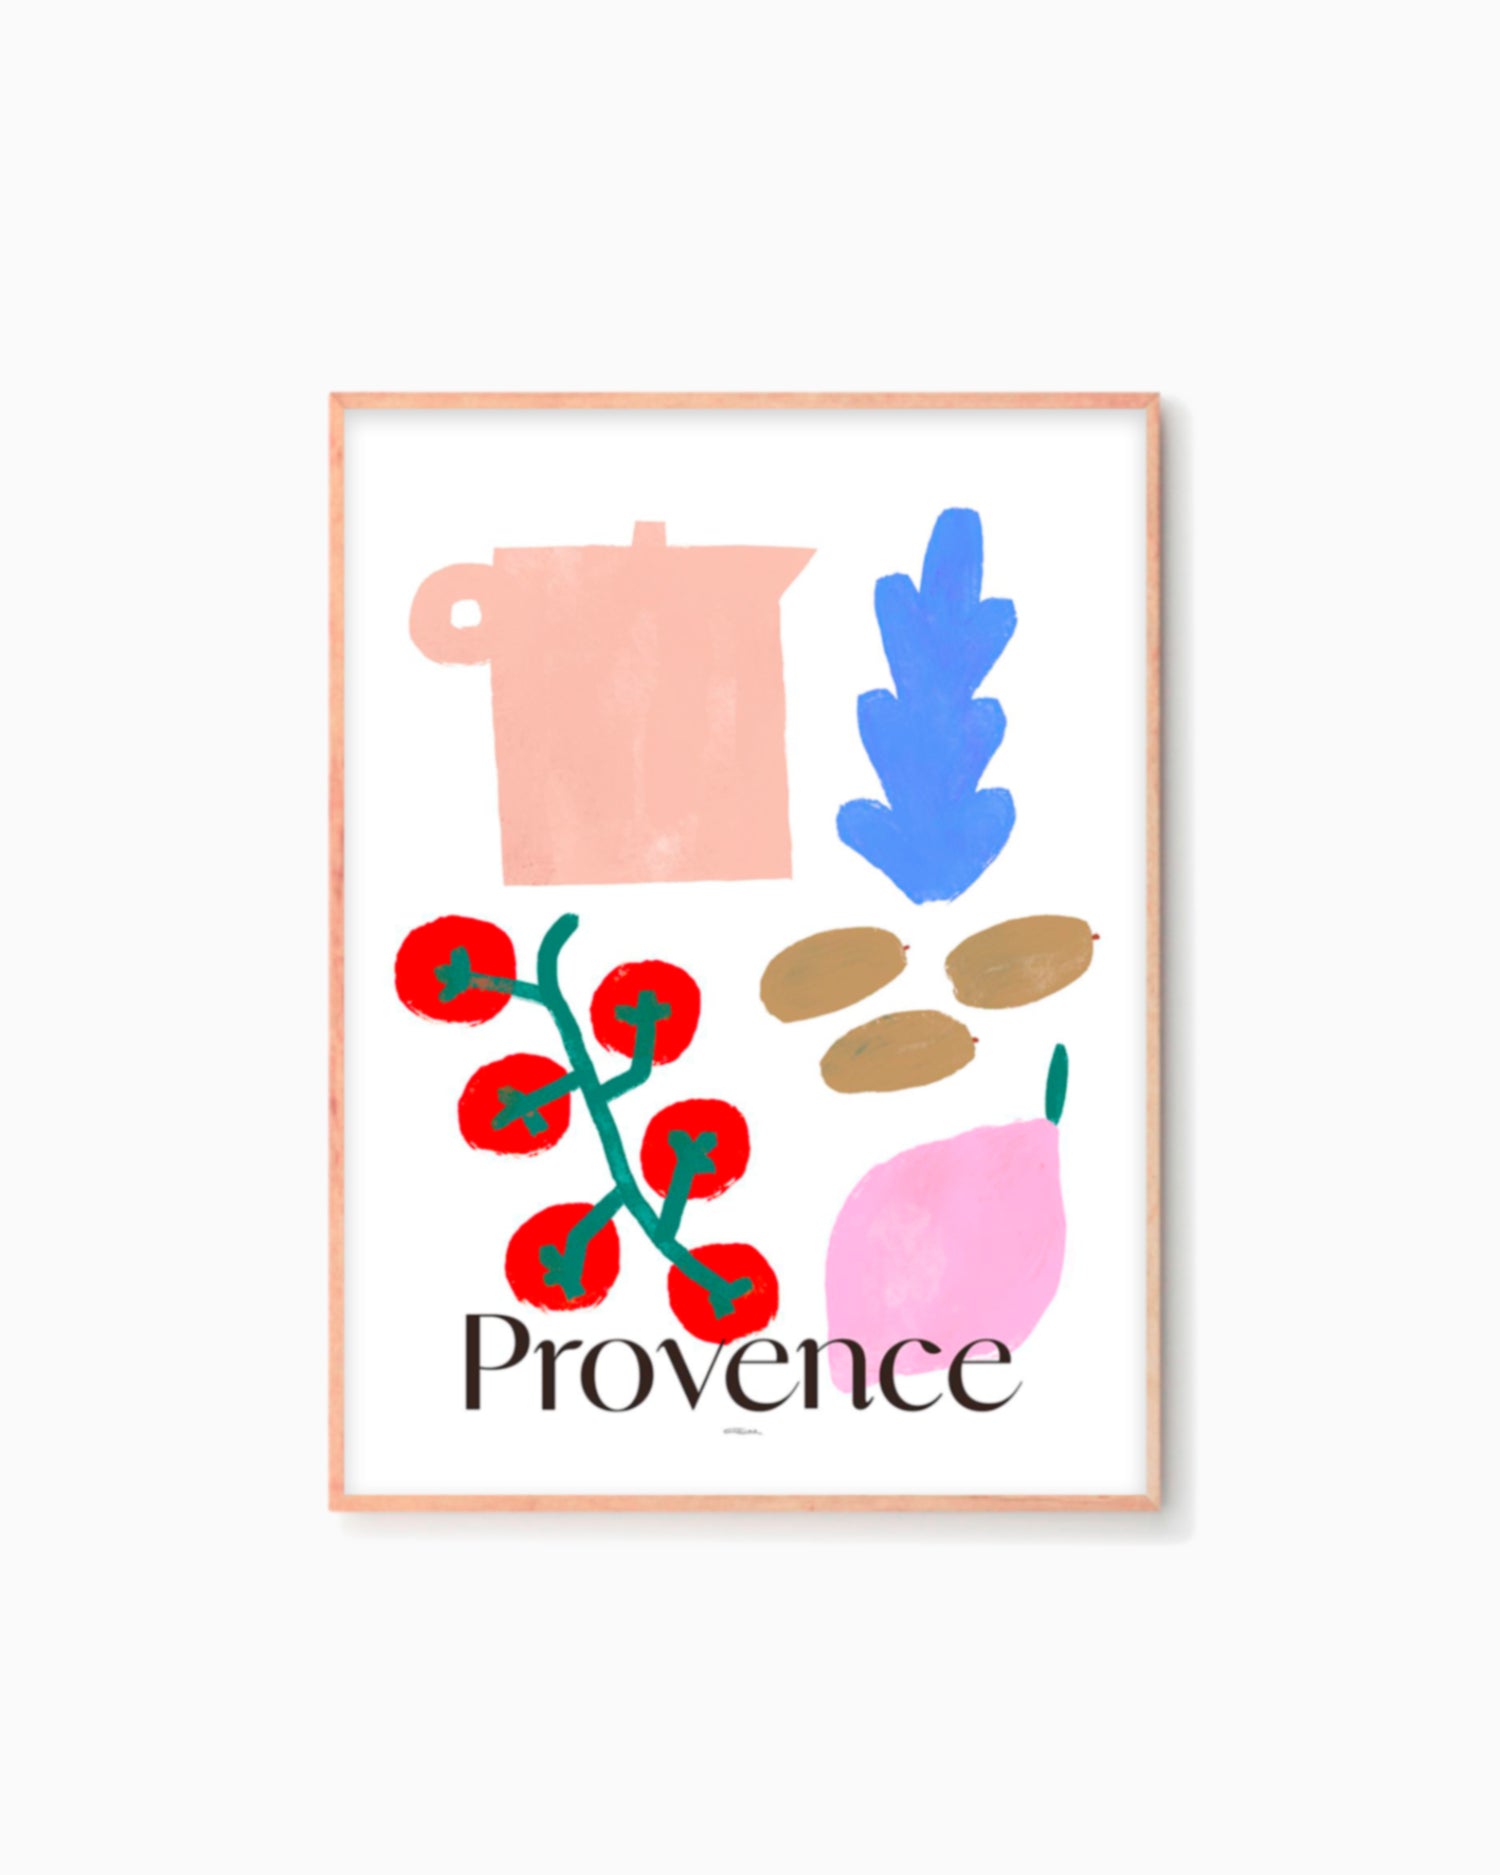 Provence - MATÍAS LARRAÍN